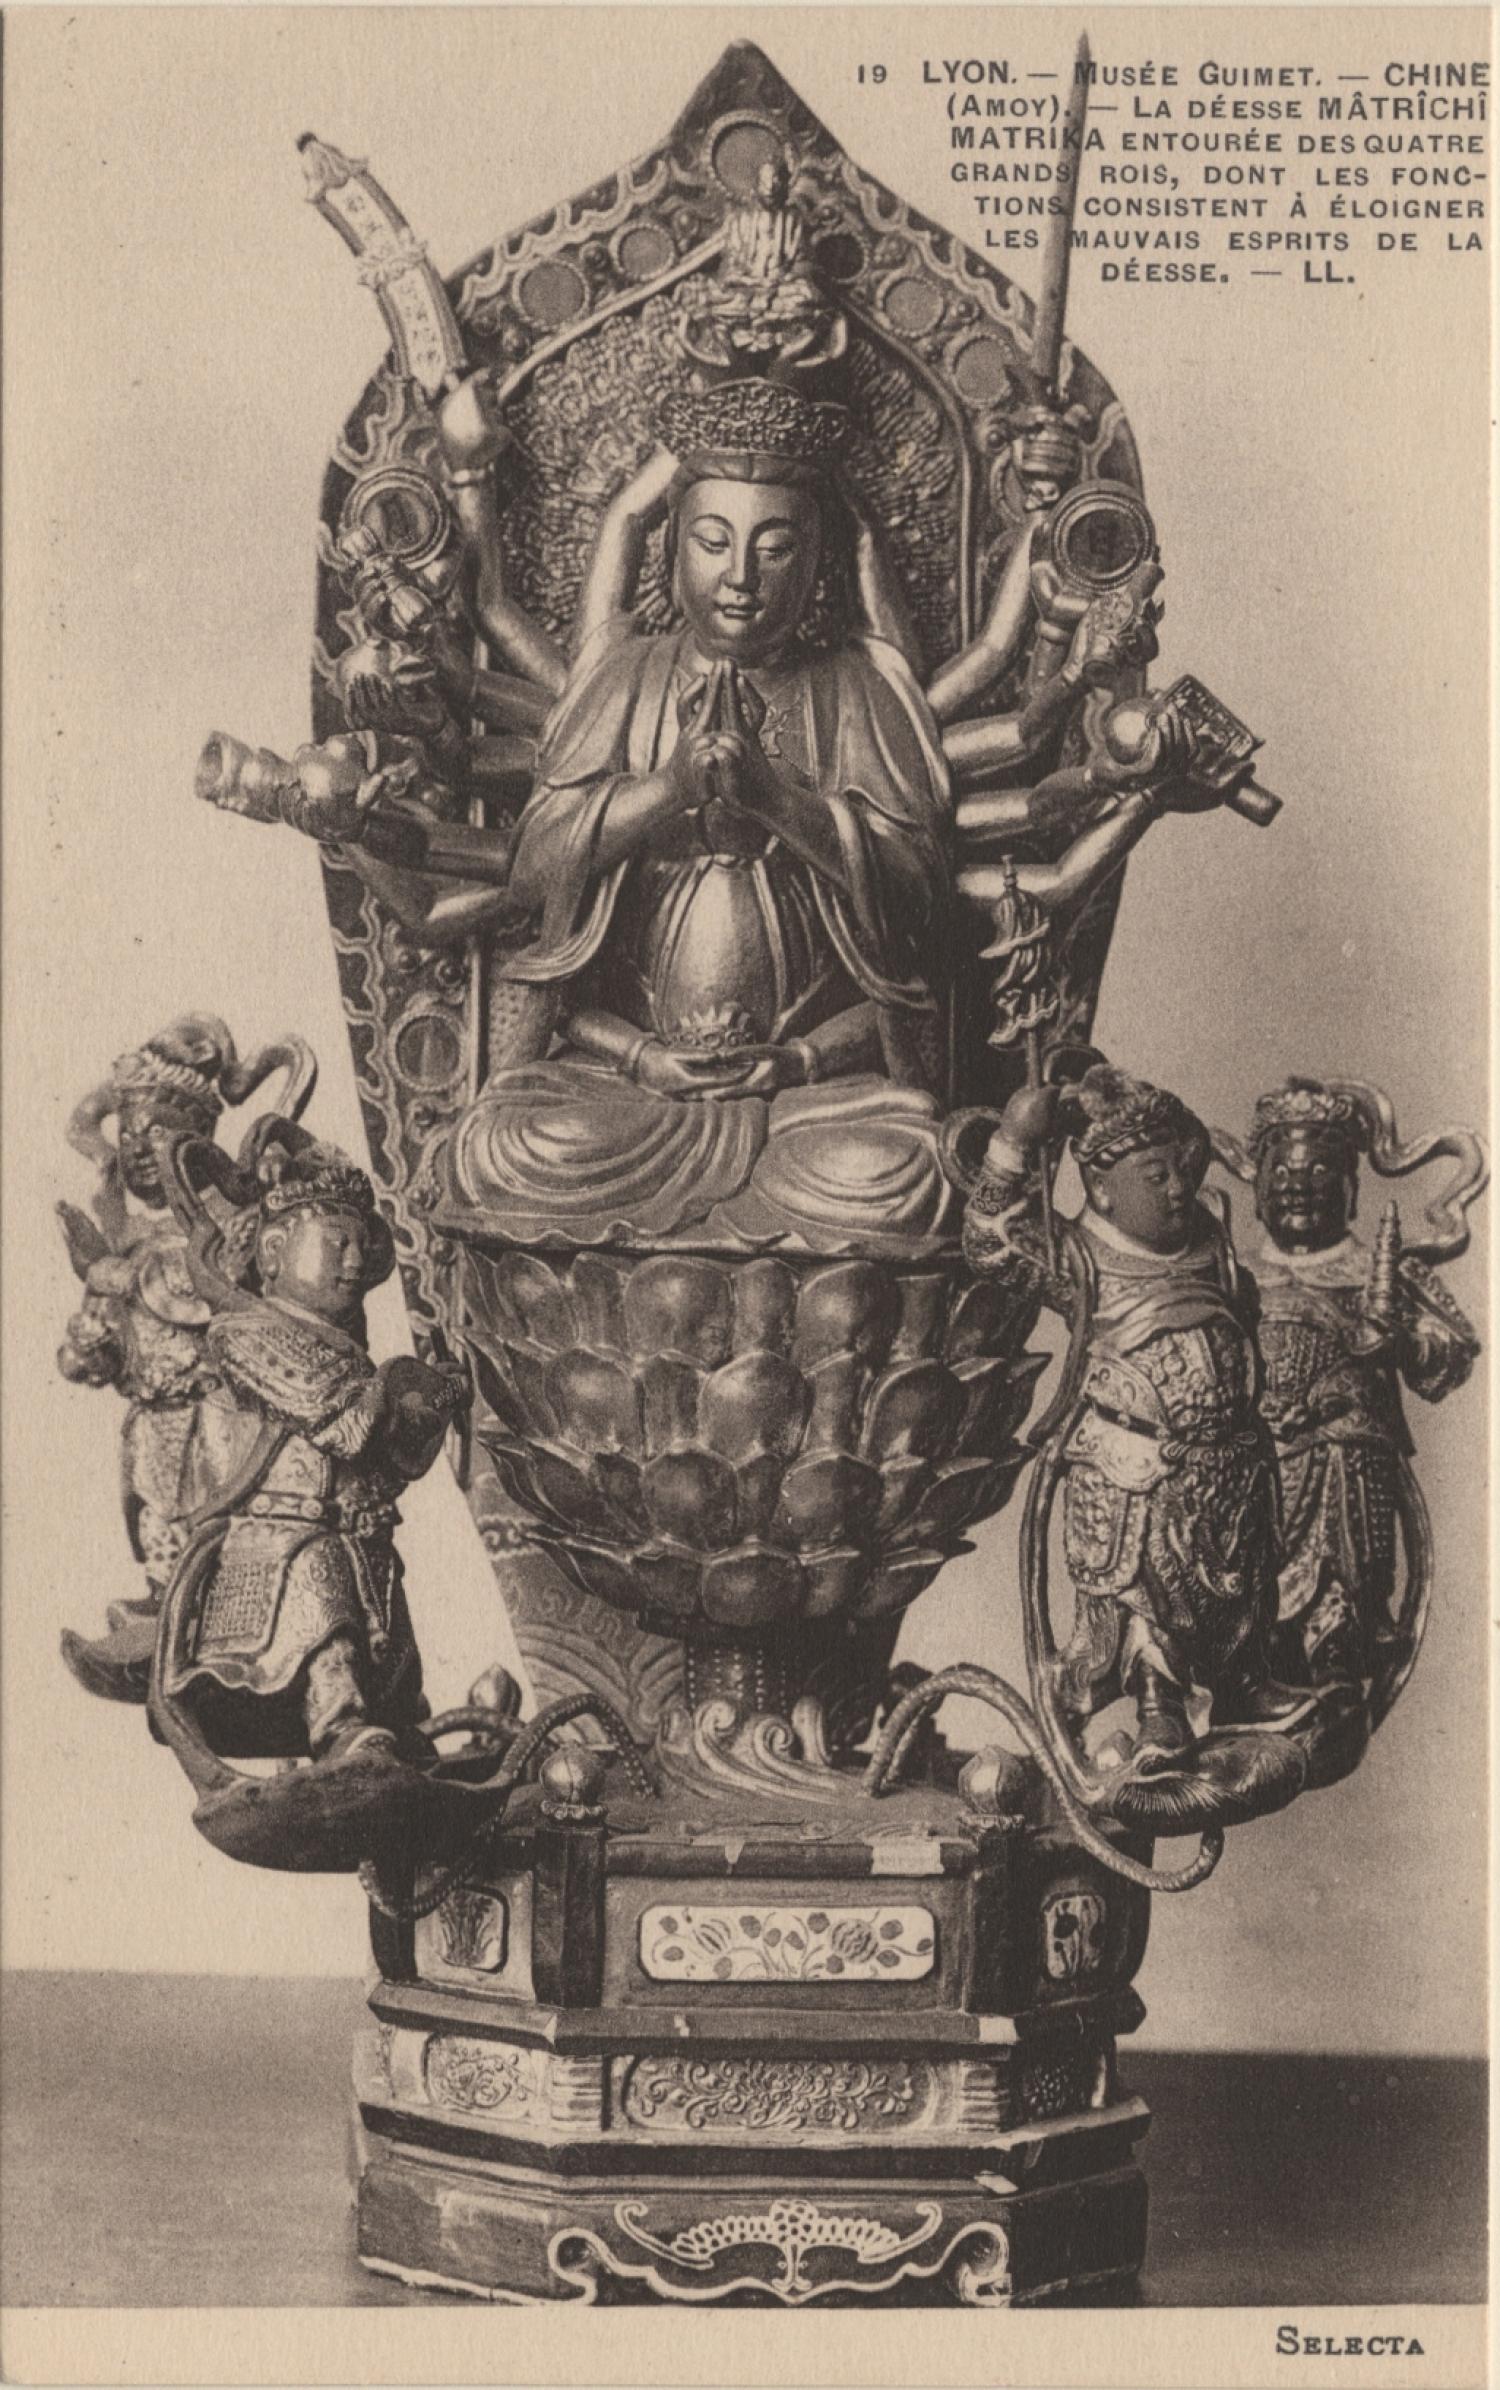 Lyon : Musée Guimet ; Chine (Amoy) ; La déesse Mâtrichi ; Matrika entourée des quatre grands rois, dont les fonctions consistent à éloigner les mauvais esprits de la déesse.